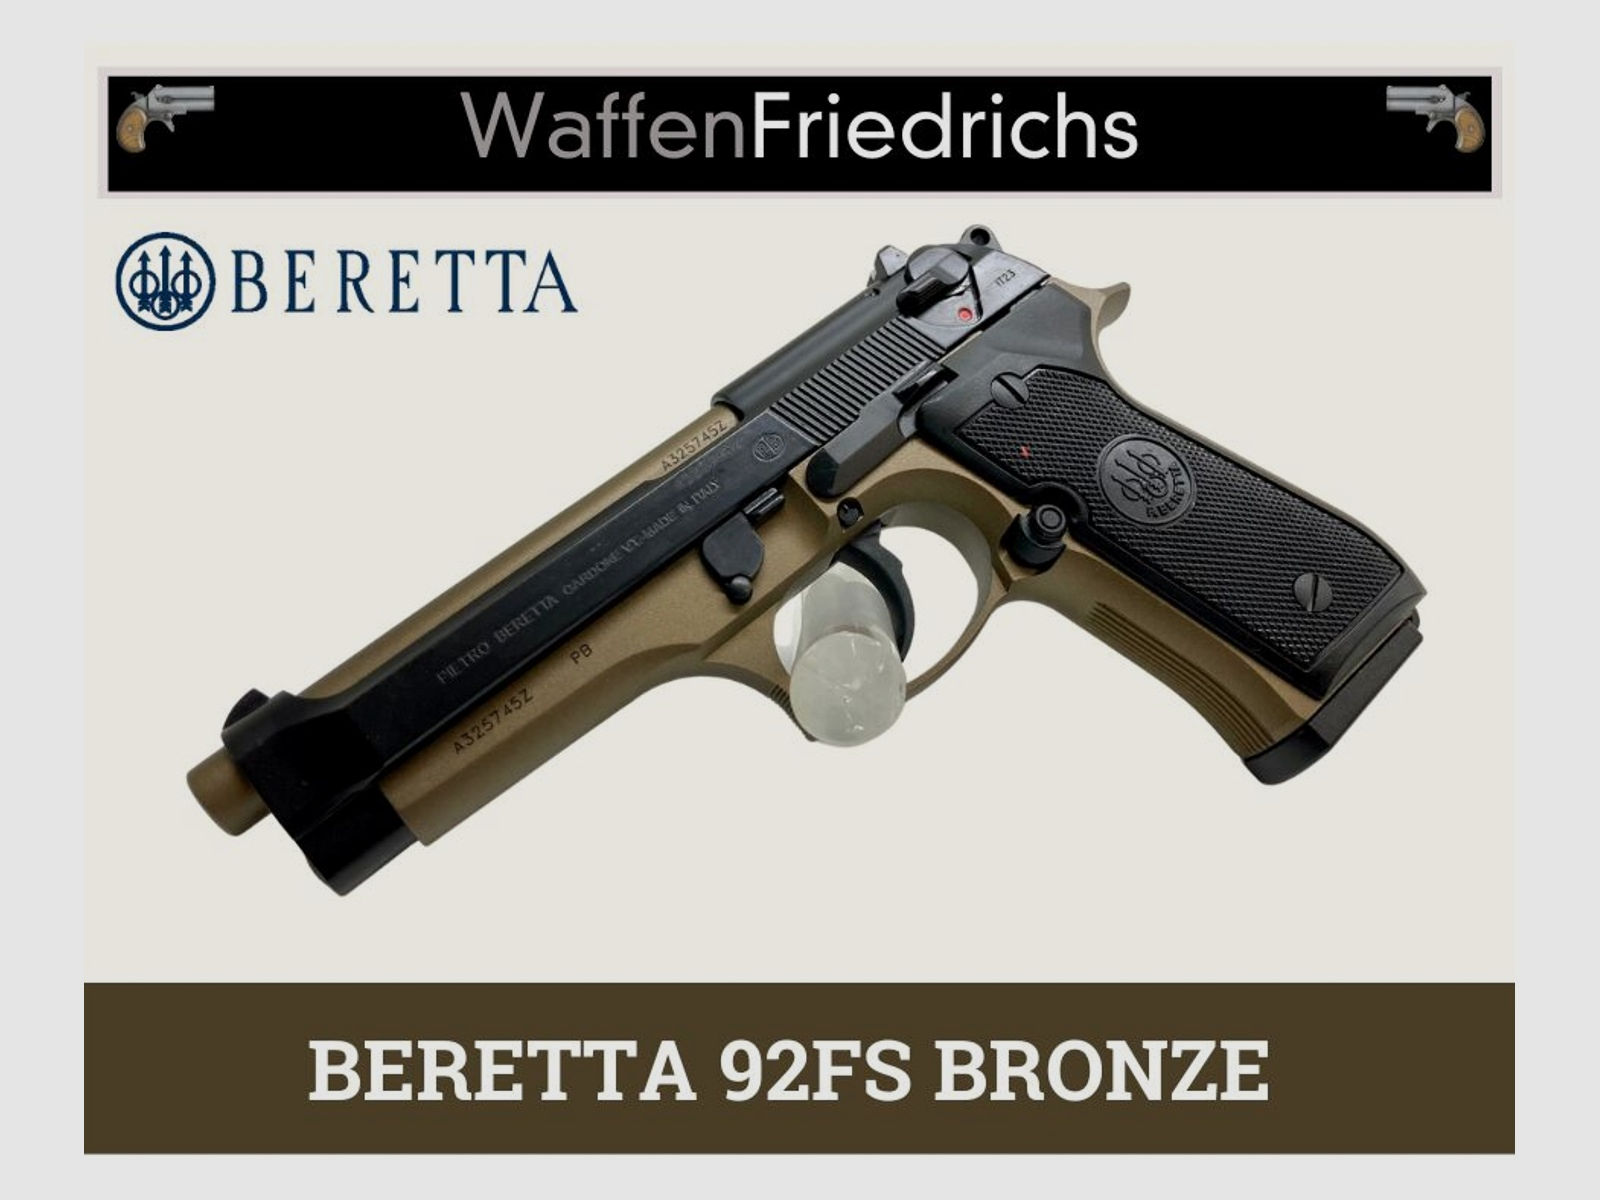 BERETTA	 92FS BRONZE - BRANDNEU! - Waffen Friedrichs